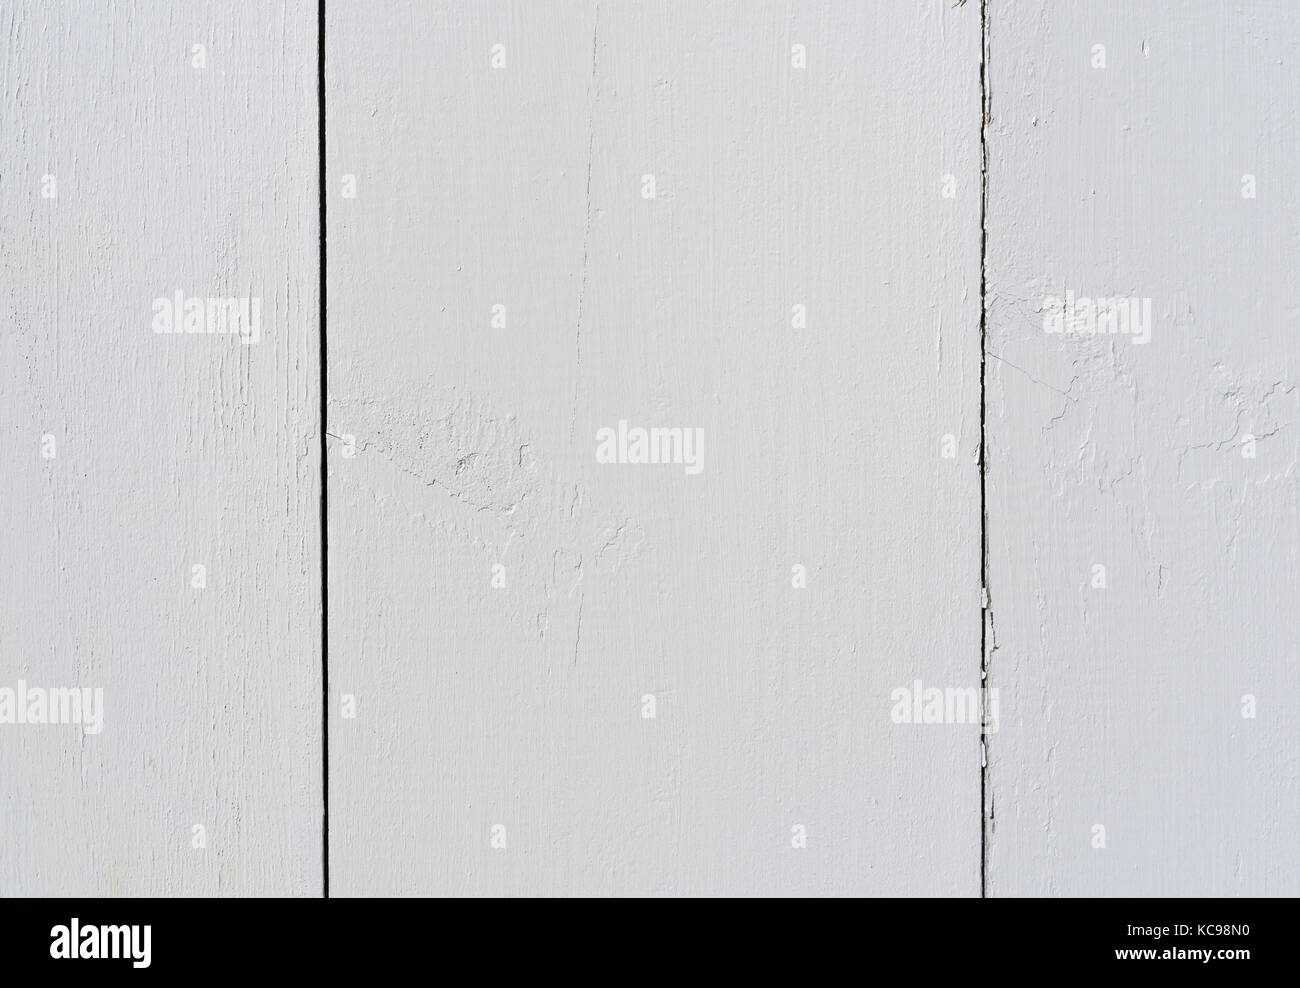 In der Nähe der weiß lackierten Holz board Siding, Risse und Peeling aus Wetter. Stockfoto